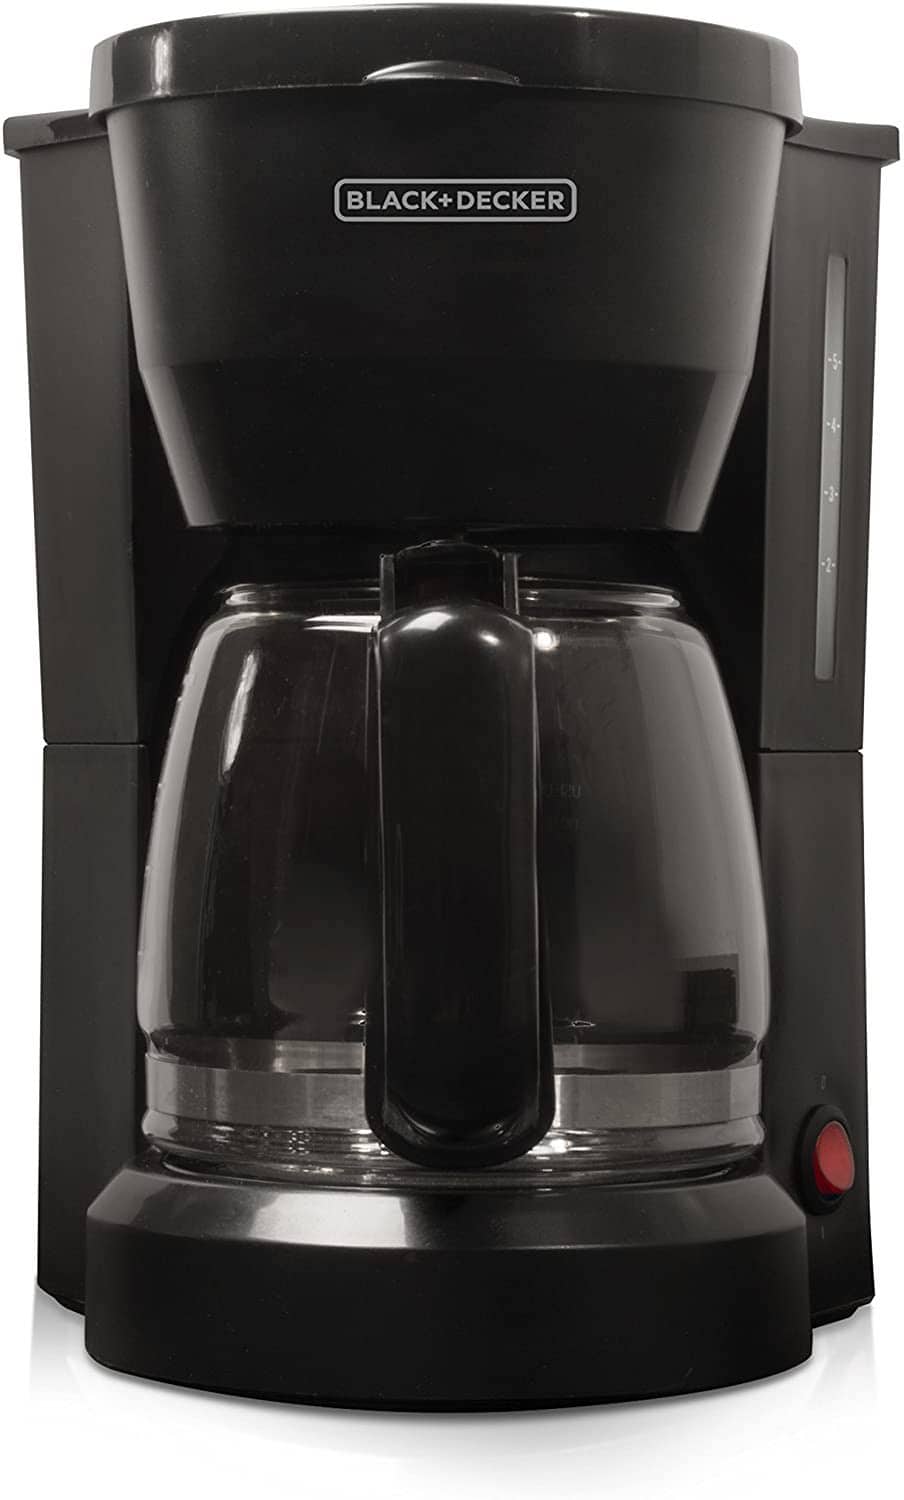 https://coffeeaffection.com/wp-content/uploads/2019/07/BLACKDECKER-DCM600B-5-Cup-Coffee-Maker.jpg